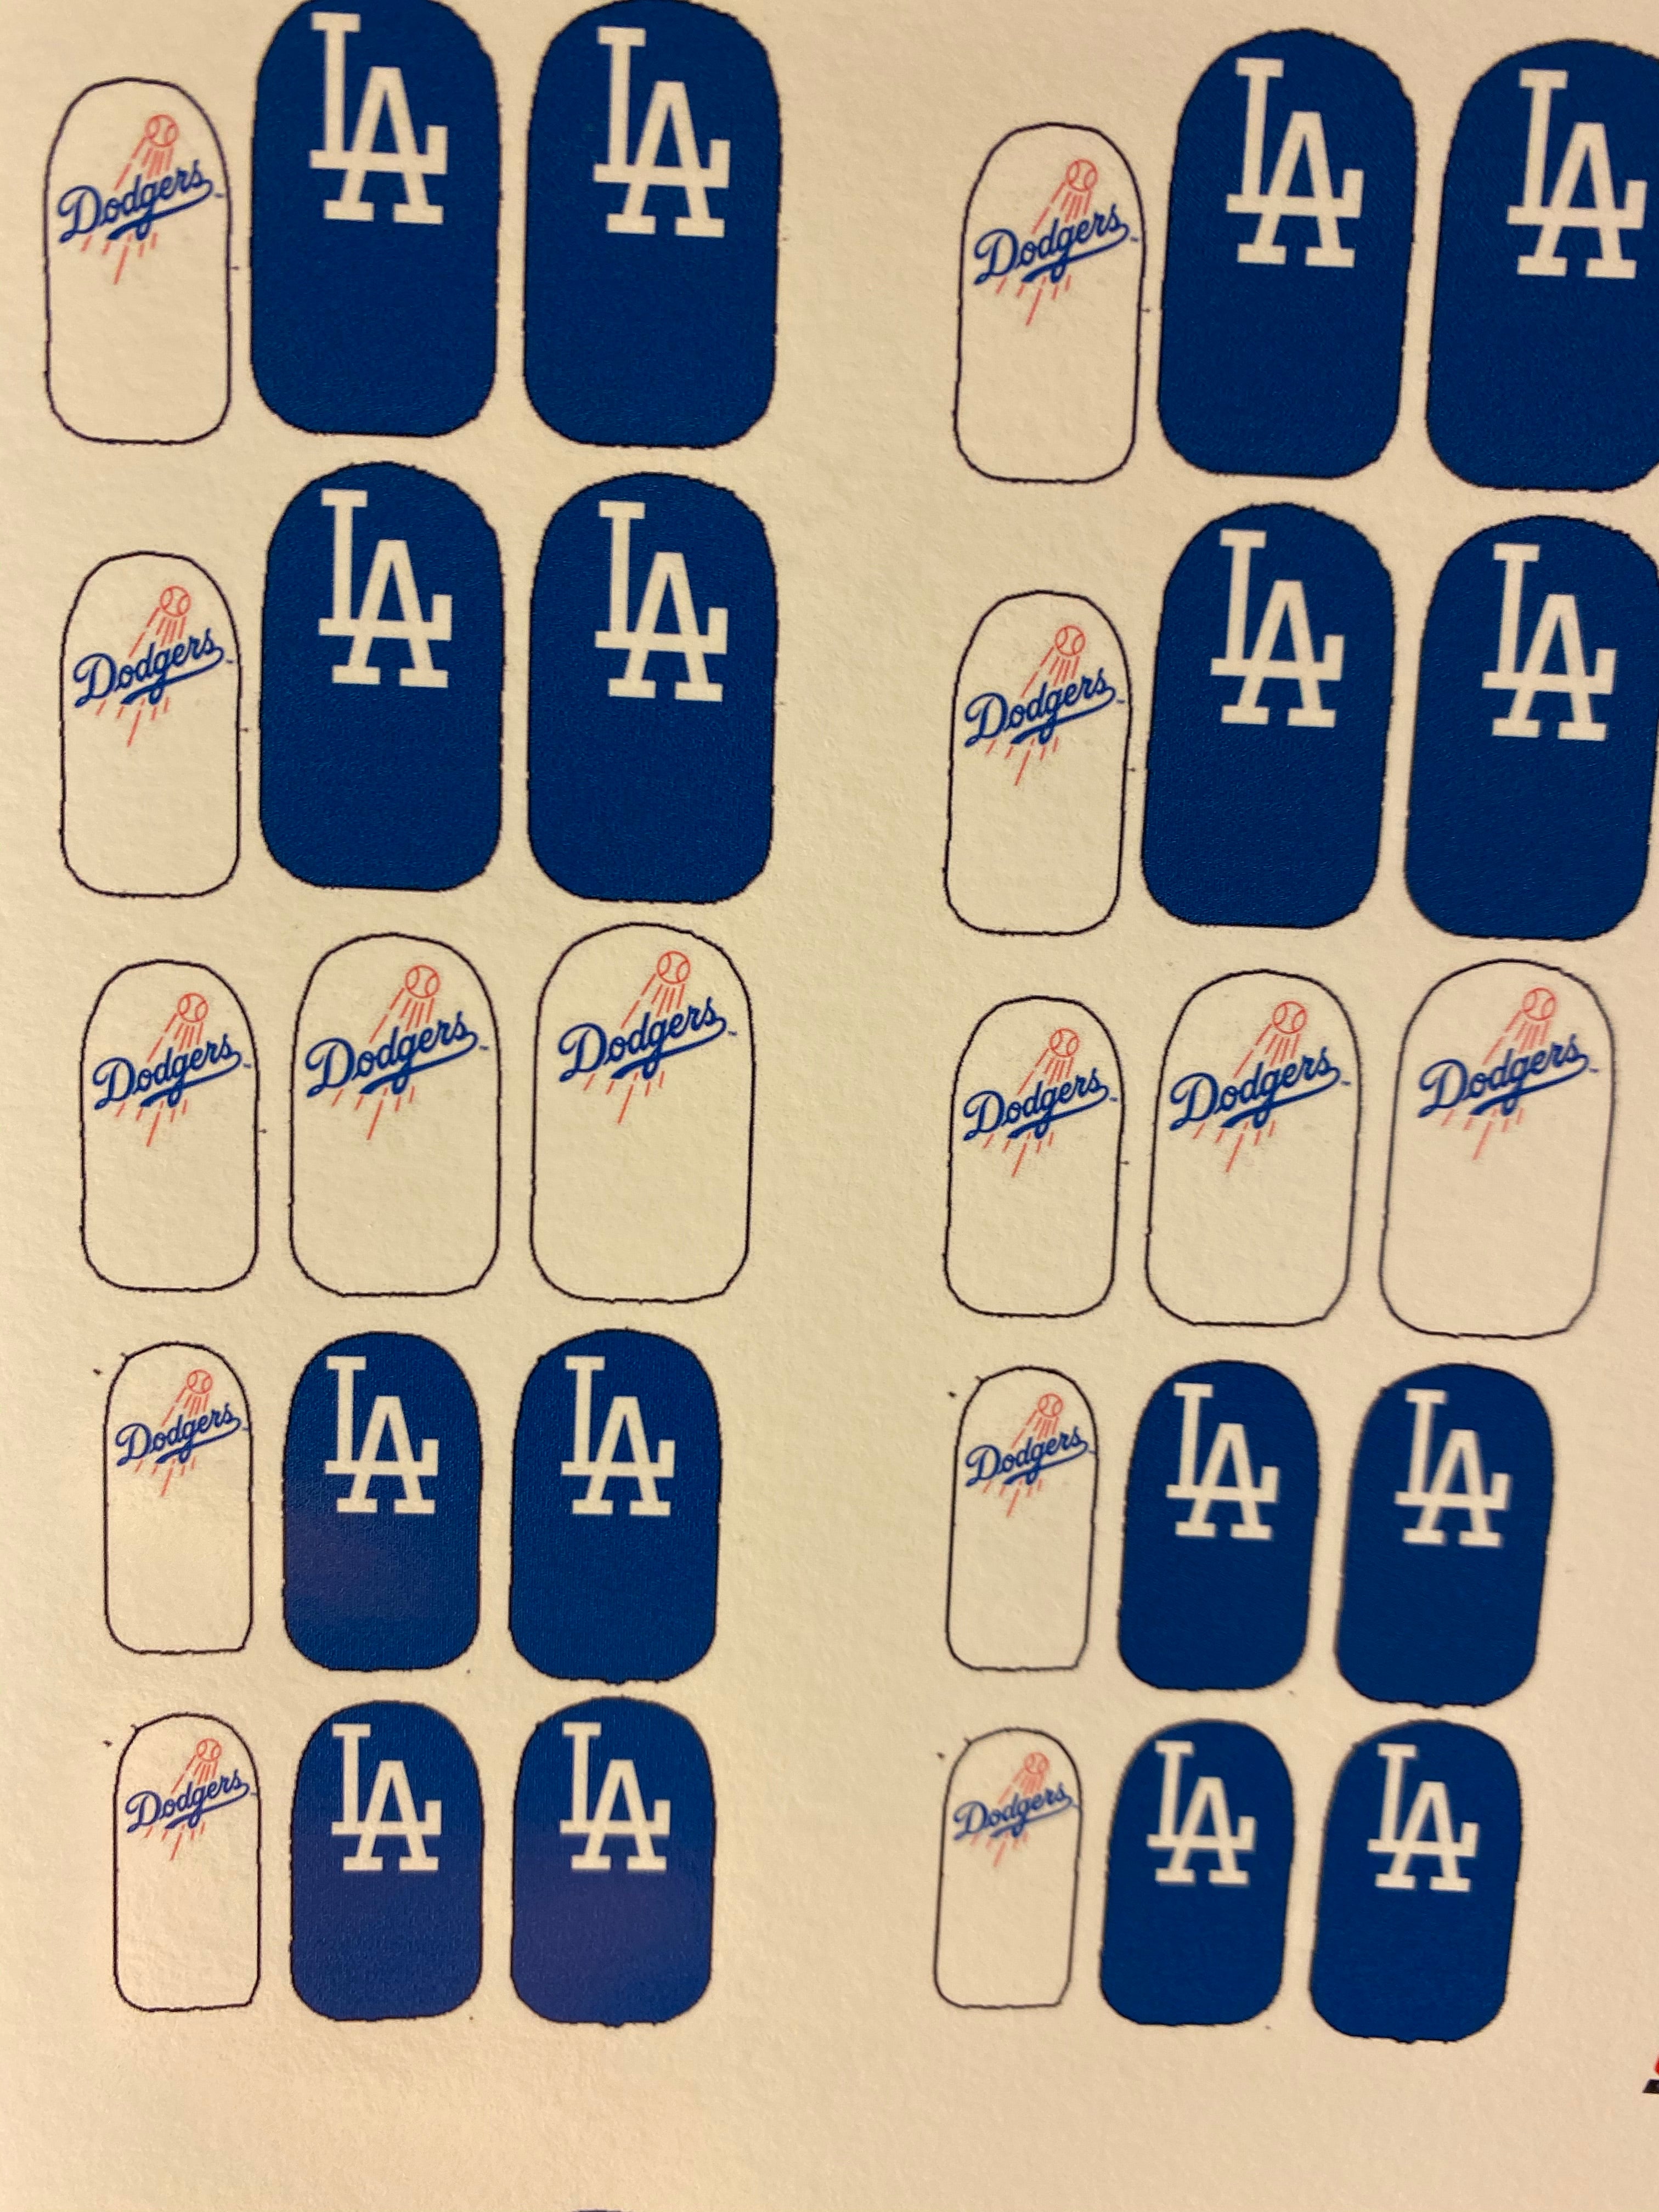 Pin on Viva Los Dodgers